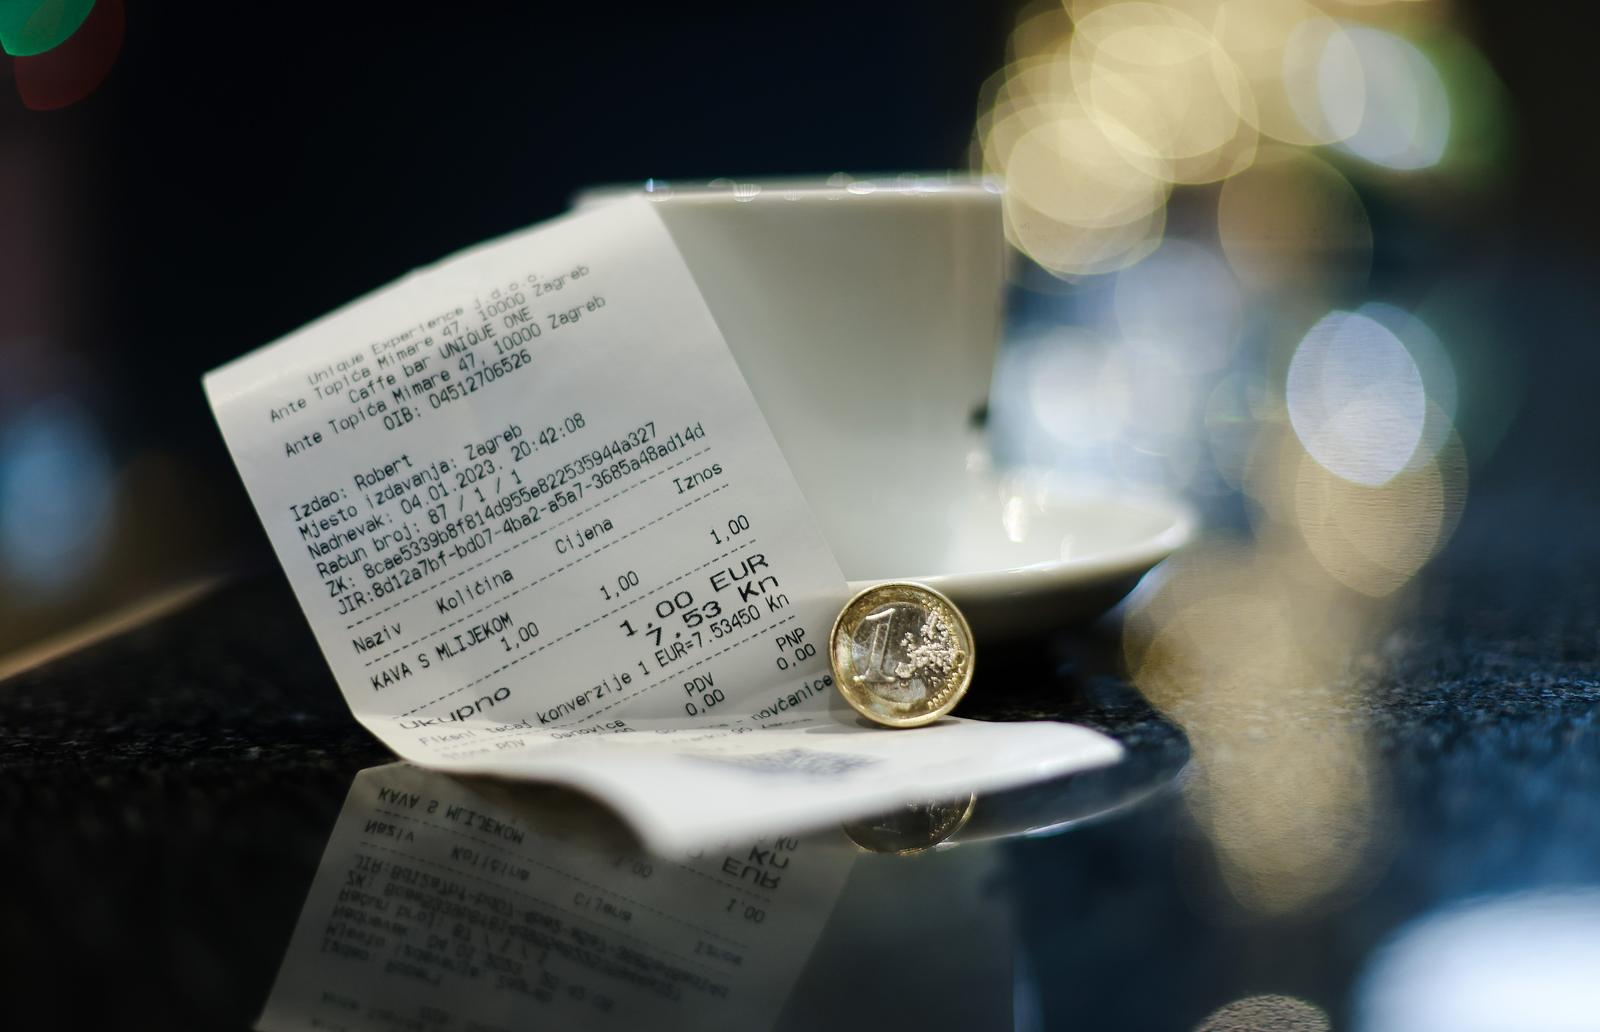 04.01.2023., Zagreb - Caffe bar Unique one na zagrebackoj Malesnici sve kave naplacuje 1 euro. Ovaj novootvoreni lokal tako je umjesto pocetnih 1.33 € za obicnu kavu, sto bi bilo ekvivalent prema srednjem tecaju, cijenu najprodavanijeg pica zaokruzio na nizu. Jos je zanimljivije sto se za cijenu od jednog eura ovdje moze popiti i kava s mlijekom kao i cappuccino a takve cijene ce drzati i dalje te ih za sada nemaju namjeru povisivati. Vlasnik Ivan Belko istice da su oni prije svega mali obiteljski kafic u Zagrebackom kvartu Malesnica.
 Da im je cilj poslovanja biti Unique ili jedinstveni. Prije svega zele da se gosti kafica osjecaju ugodno i dobrodoslo. Takodjer zele da njihovo osoblje kao i njihove obitelji imaju redovita i prihvatljiva primanja kao i dovoljno slobodnog vremena za sebe i obitelj. Sto se tice cijene kave od 1 eura, smatra da je to realno i da si to svatko moze priustiti. Nadalje spominje da je vecina iskoristila ovaj prelazak u euro za nerealna poskupljenja. Gosti su njih zadovoljni cijenom i kvalitetom kave i usluge. Za kraj zaposlenici kafica: Petra Seper i Robert pozivaju sve koji mogu neka navrate do Malesnice na kavu za jedan euro i da se sad sami uvjerie u kvalitetu kave te da im svakako kazu jel valja! Photo: Sanjin Strukic/PIXSELL